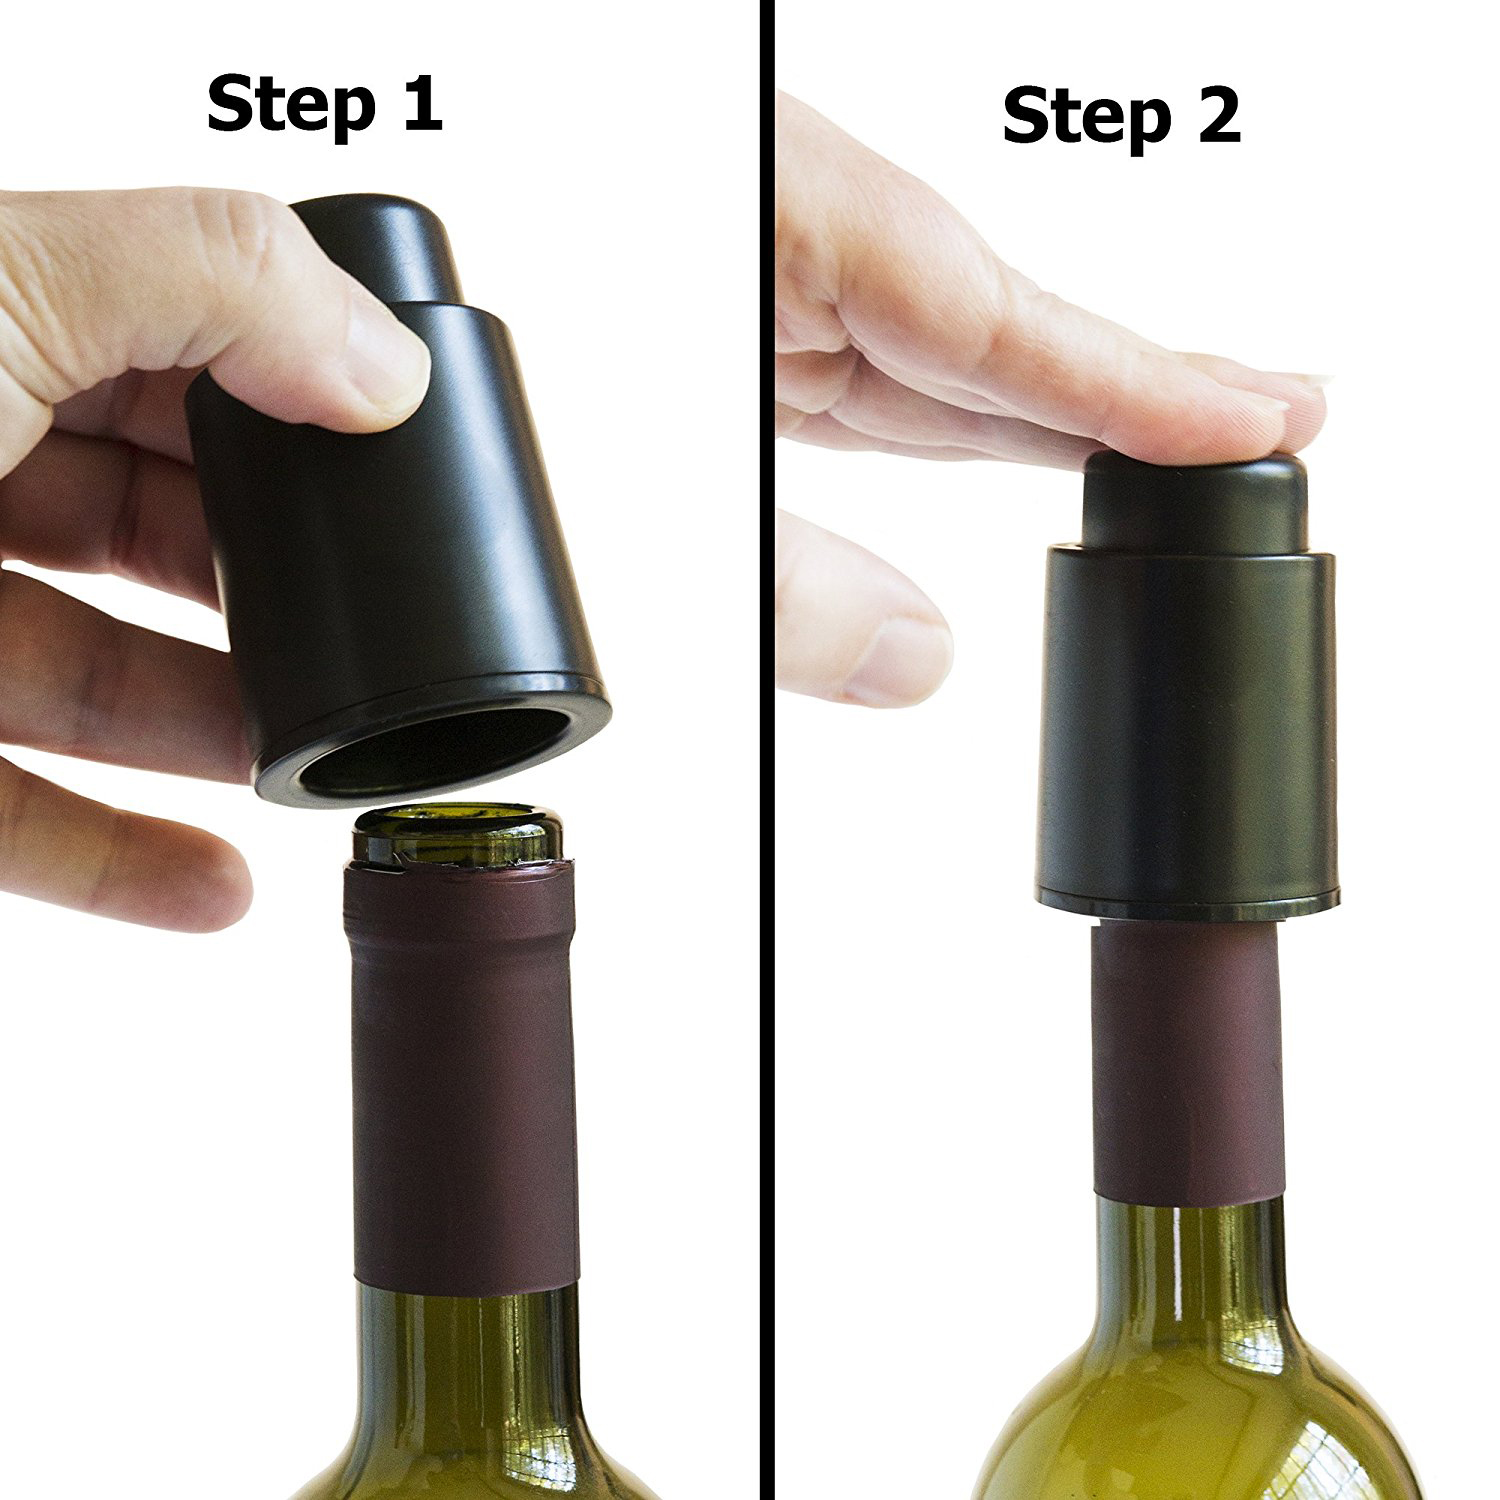 אמרונה - משאבת ווקום ופקק מפלסטיק למניעת חמצון היין וסגירה הרמטית של הבקבוק. אריזת מתנה.